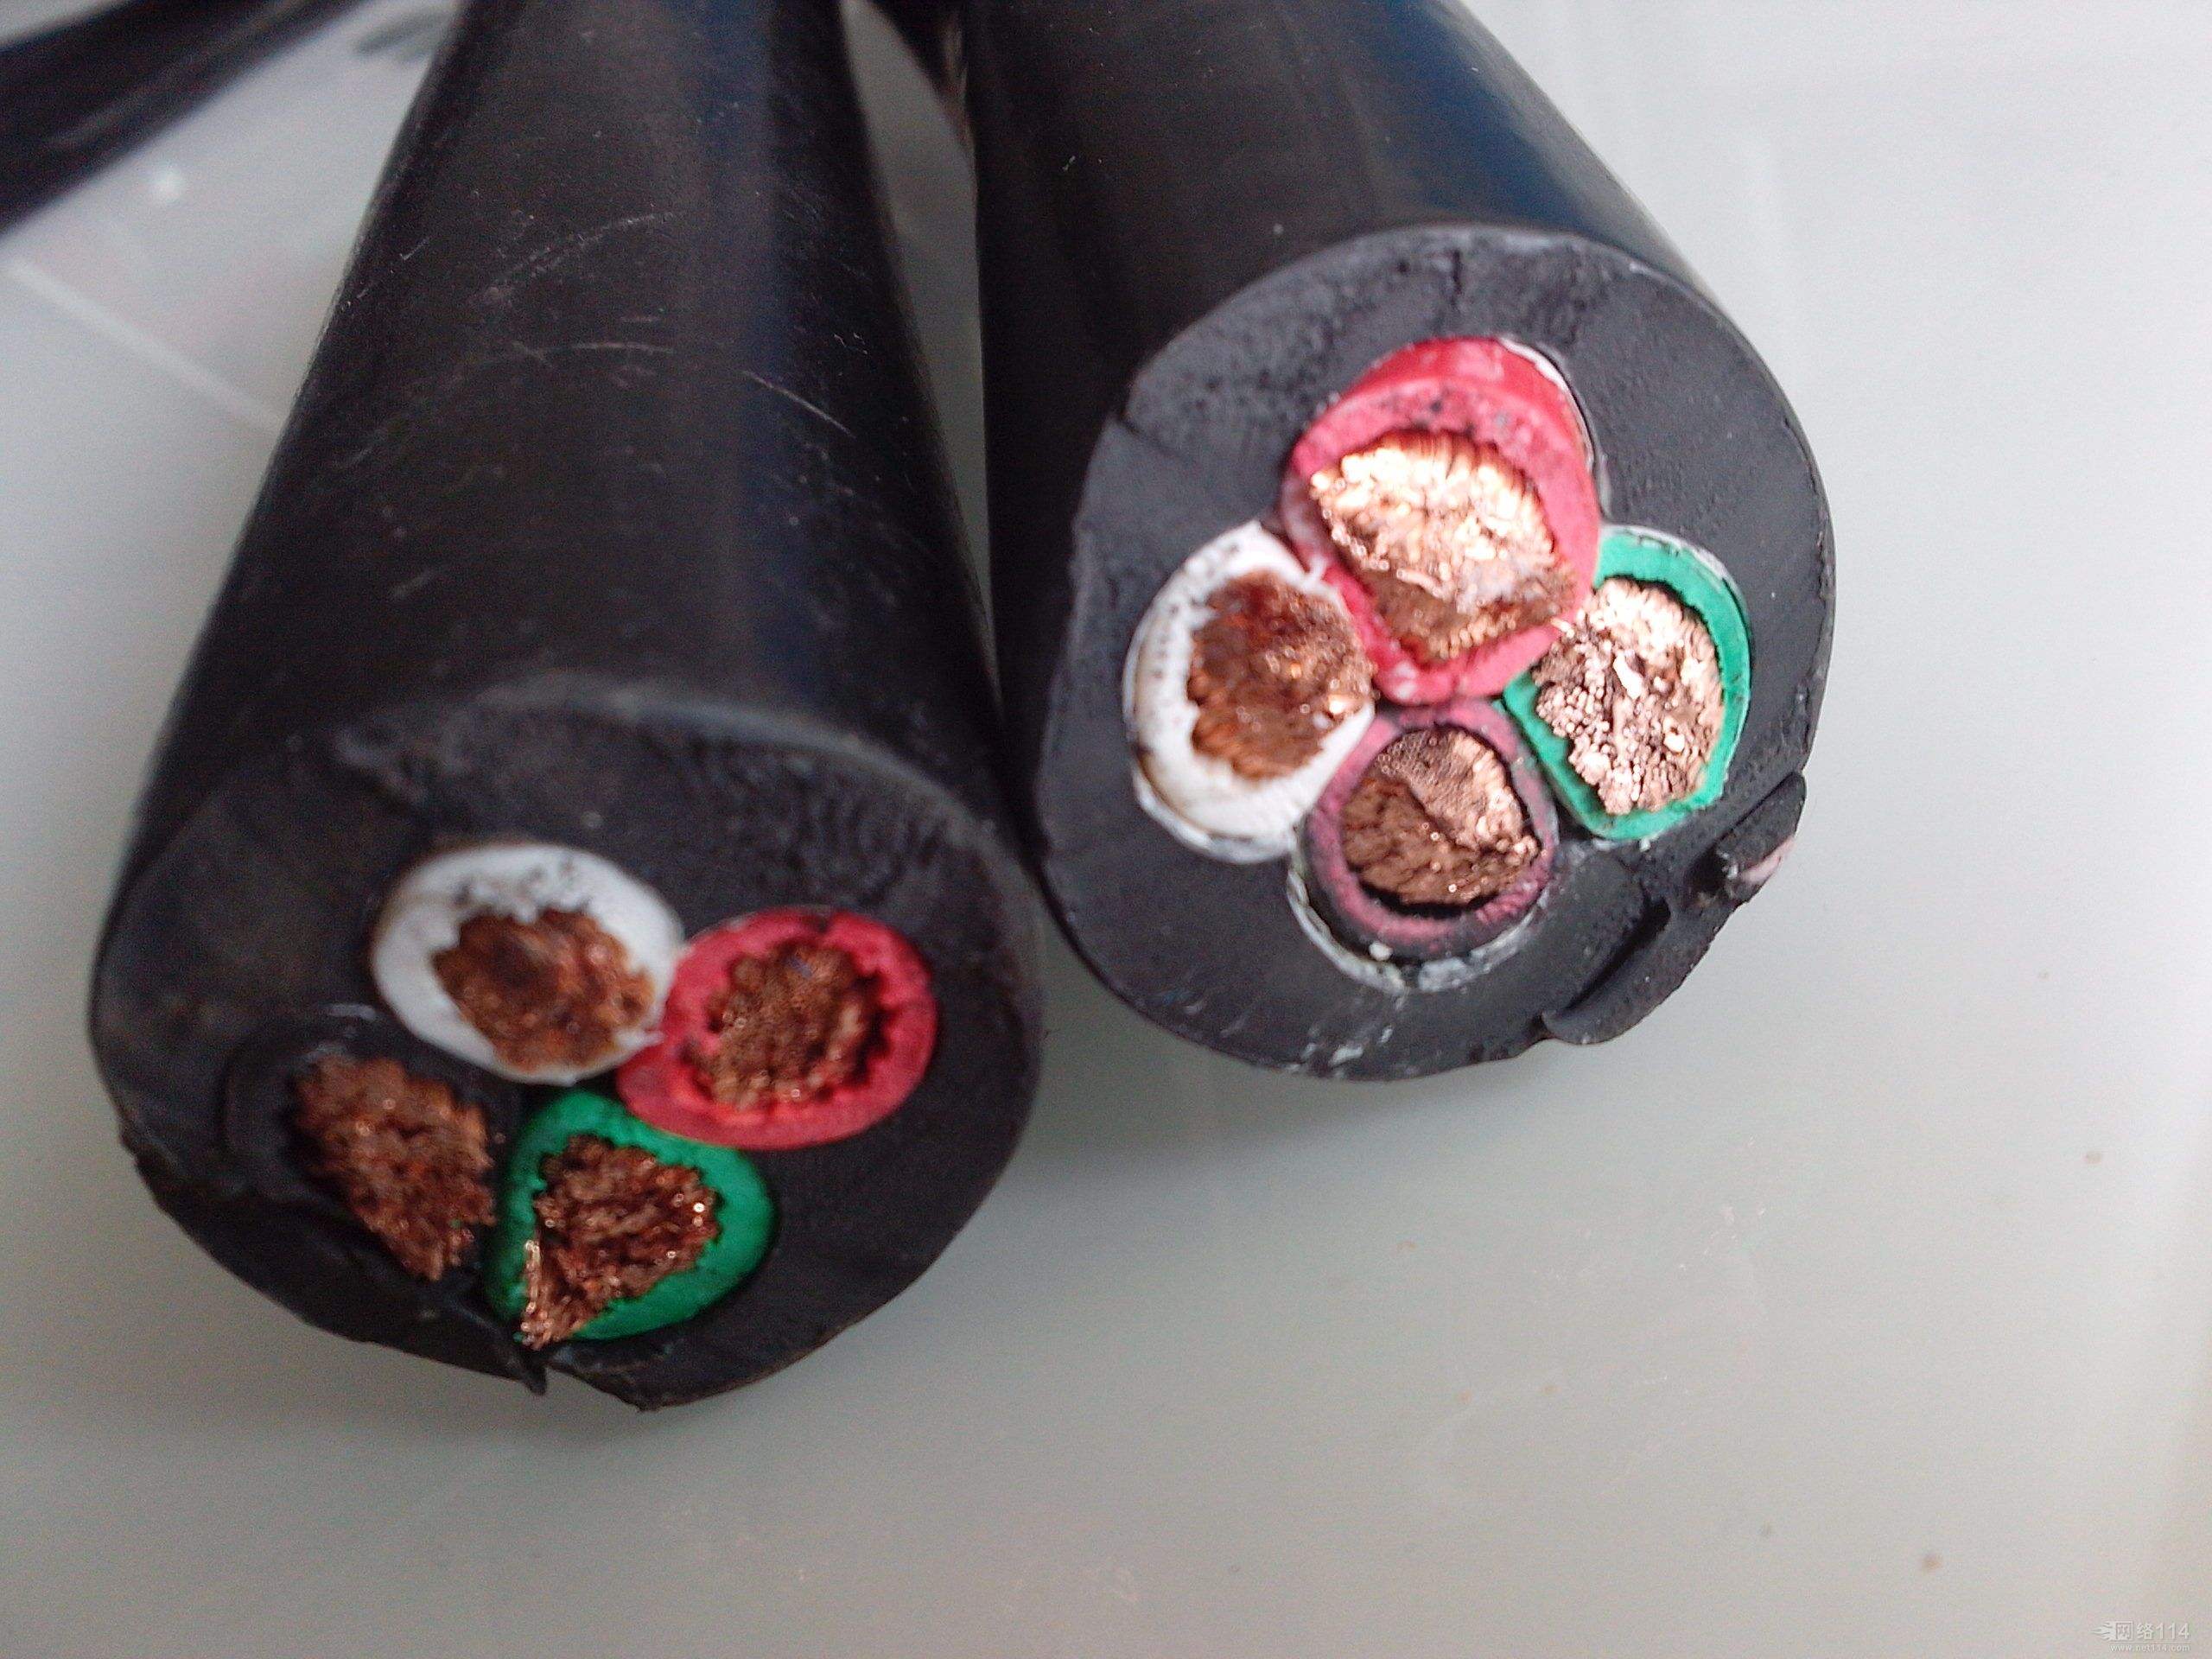 津宗高压铝合金电缆 耐磨损抗油污软电缆金属屏蔽电缆量多价优